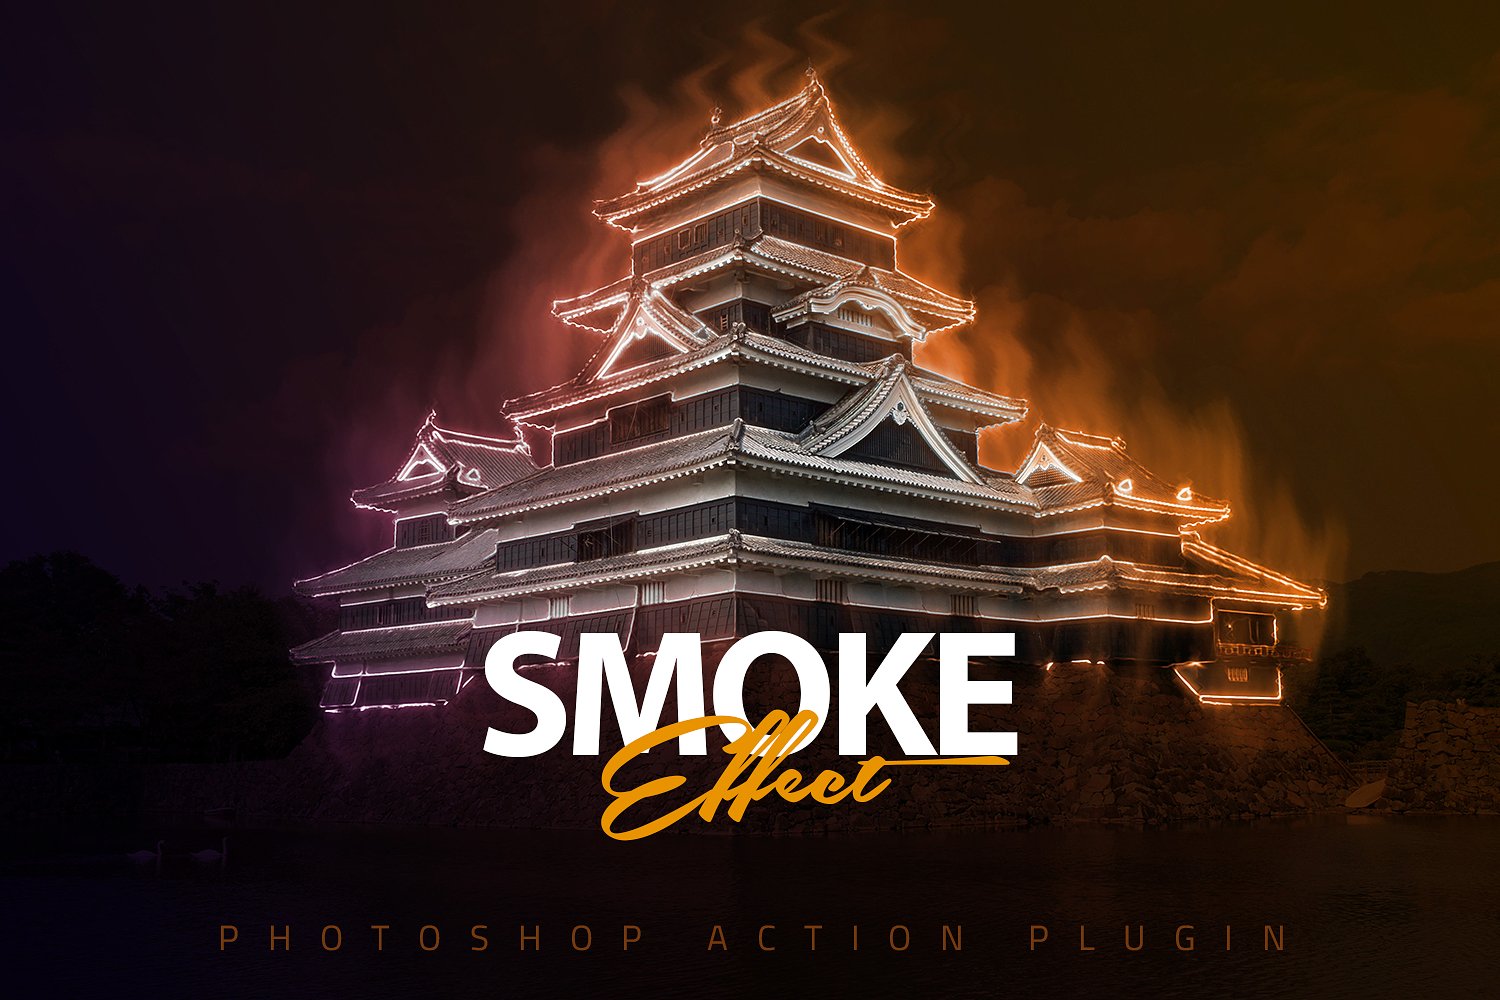 神秘的烟雾效应PS动作下载 Smoke Effect Photoshop Action [atn]插图(5)